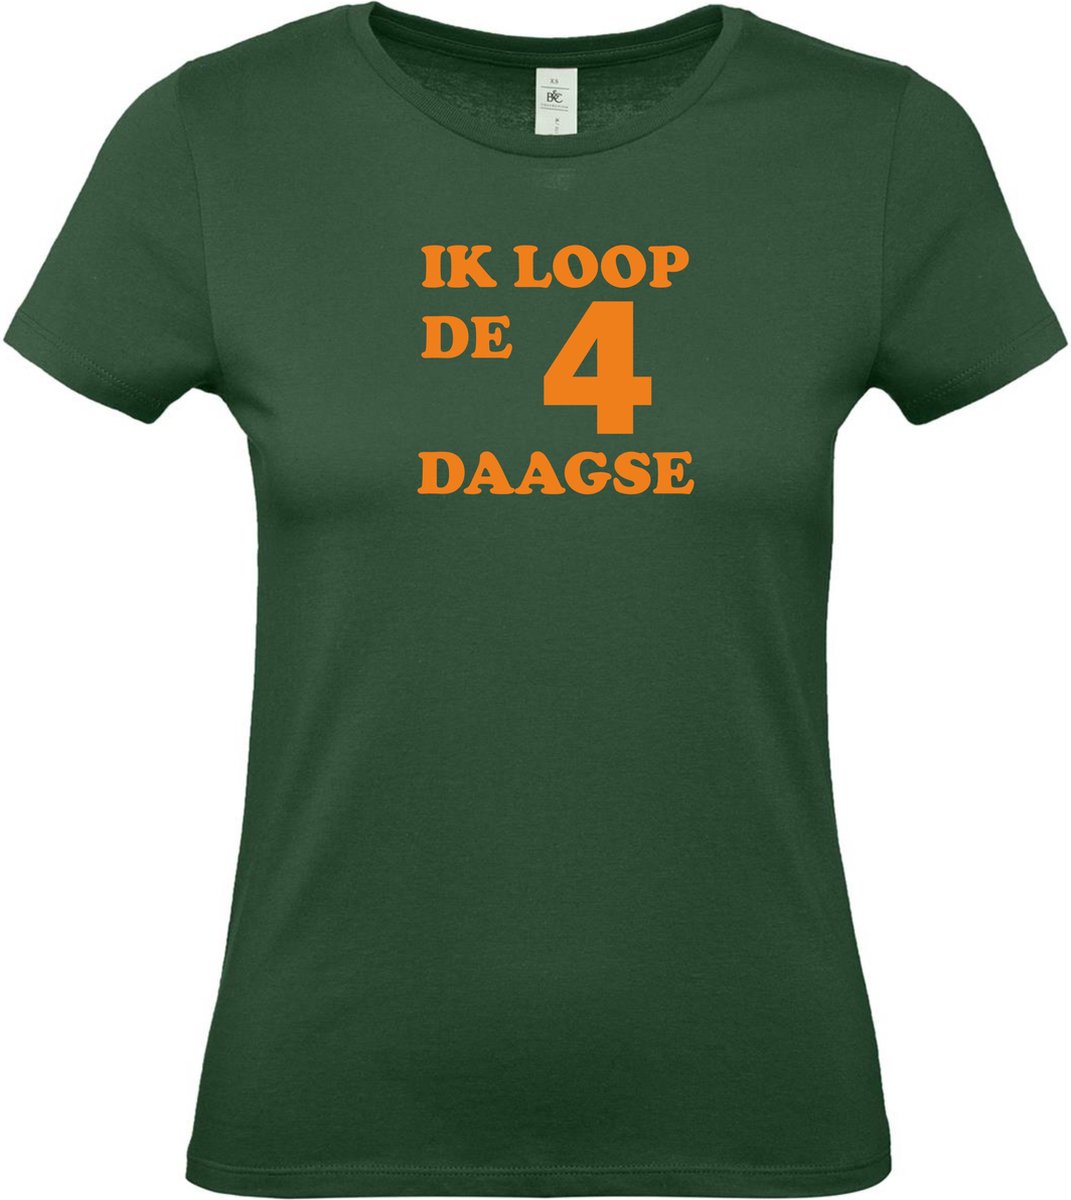 Dames t-shirt Ik loop de 4 daagse |Wandelvierdaagse | vierdaagse Nijmegen | Roze woensdag | Groen | maat L